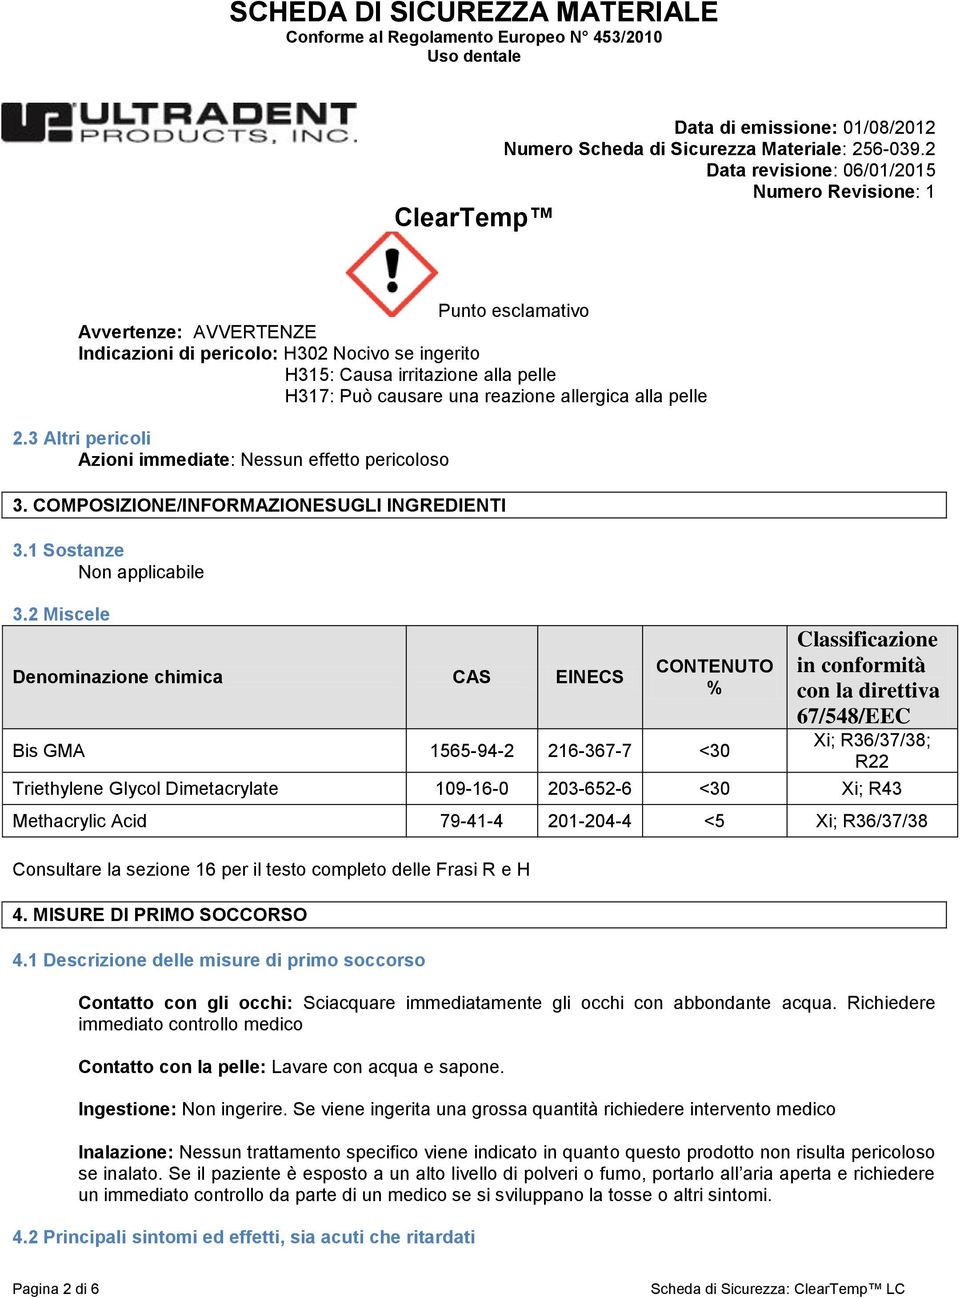 2 Miscele Denominazione chimica CAS EINECS CONTENUTO % Bis GMA 1565-94-2 216-367-7 <30 Classificazione in conformità con la direttiva 67/548/EEC Xi; R36/37/38; R22 Triethylene Glycol Dimetacrylate